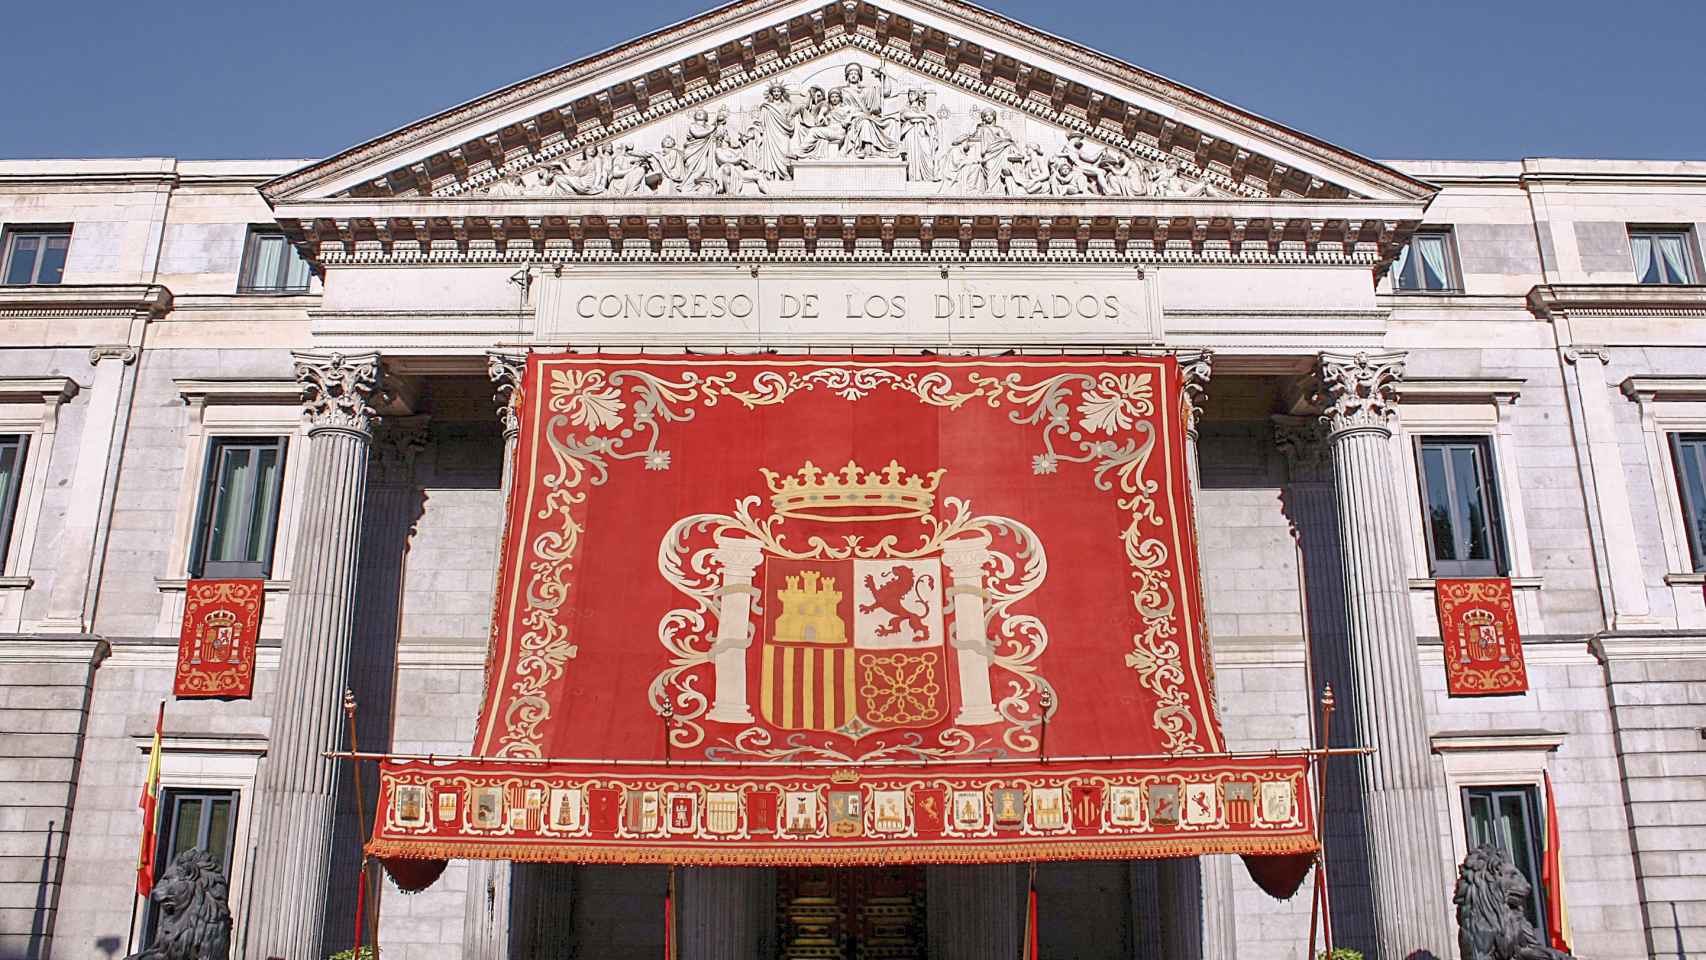 El baldaquino en la fachada del Congreso de los Diputados que sólo se va a poder ver este lunes y martes en Madrid.